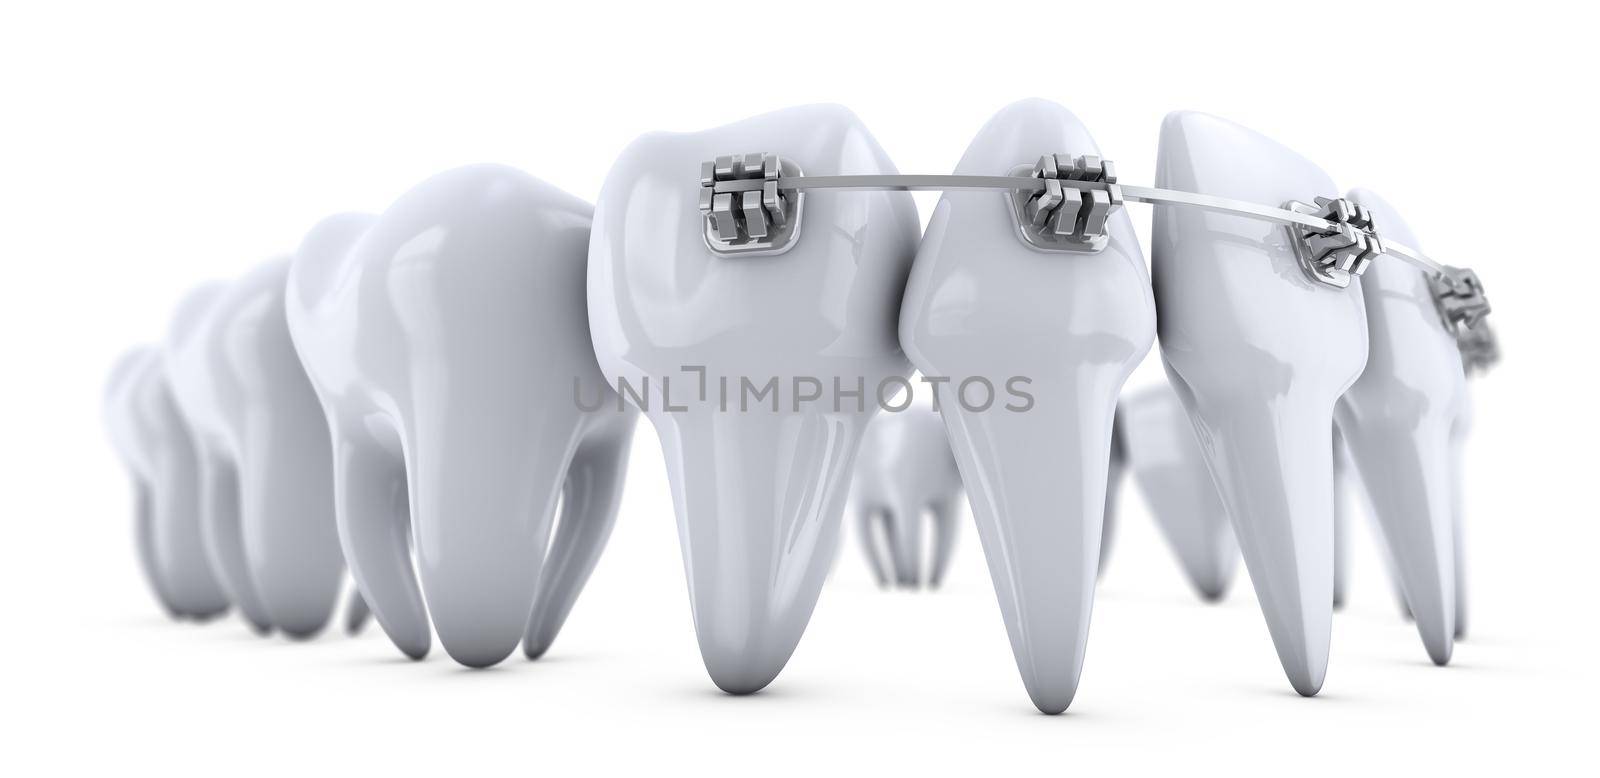 Metal dental brackets mounted on the teeth. 3d render.